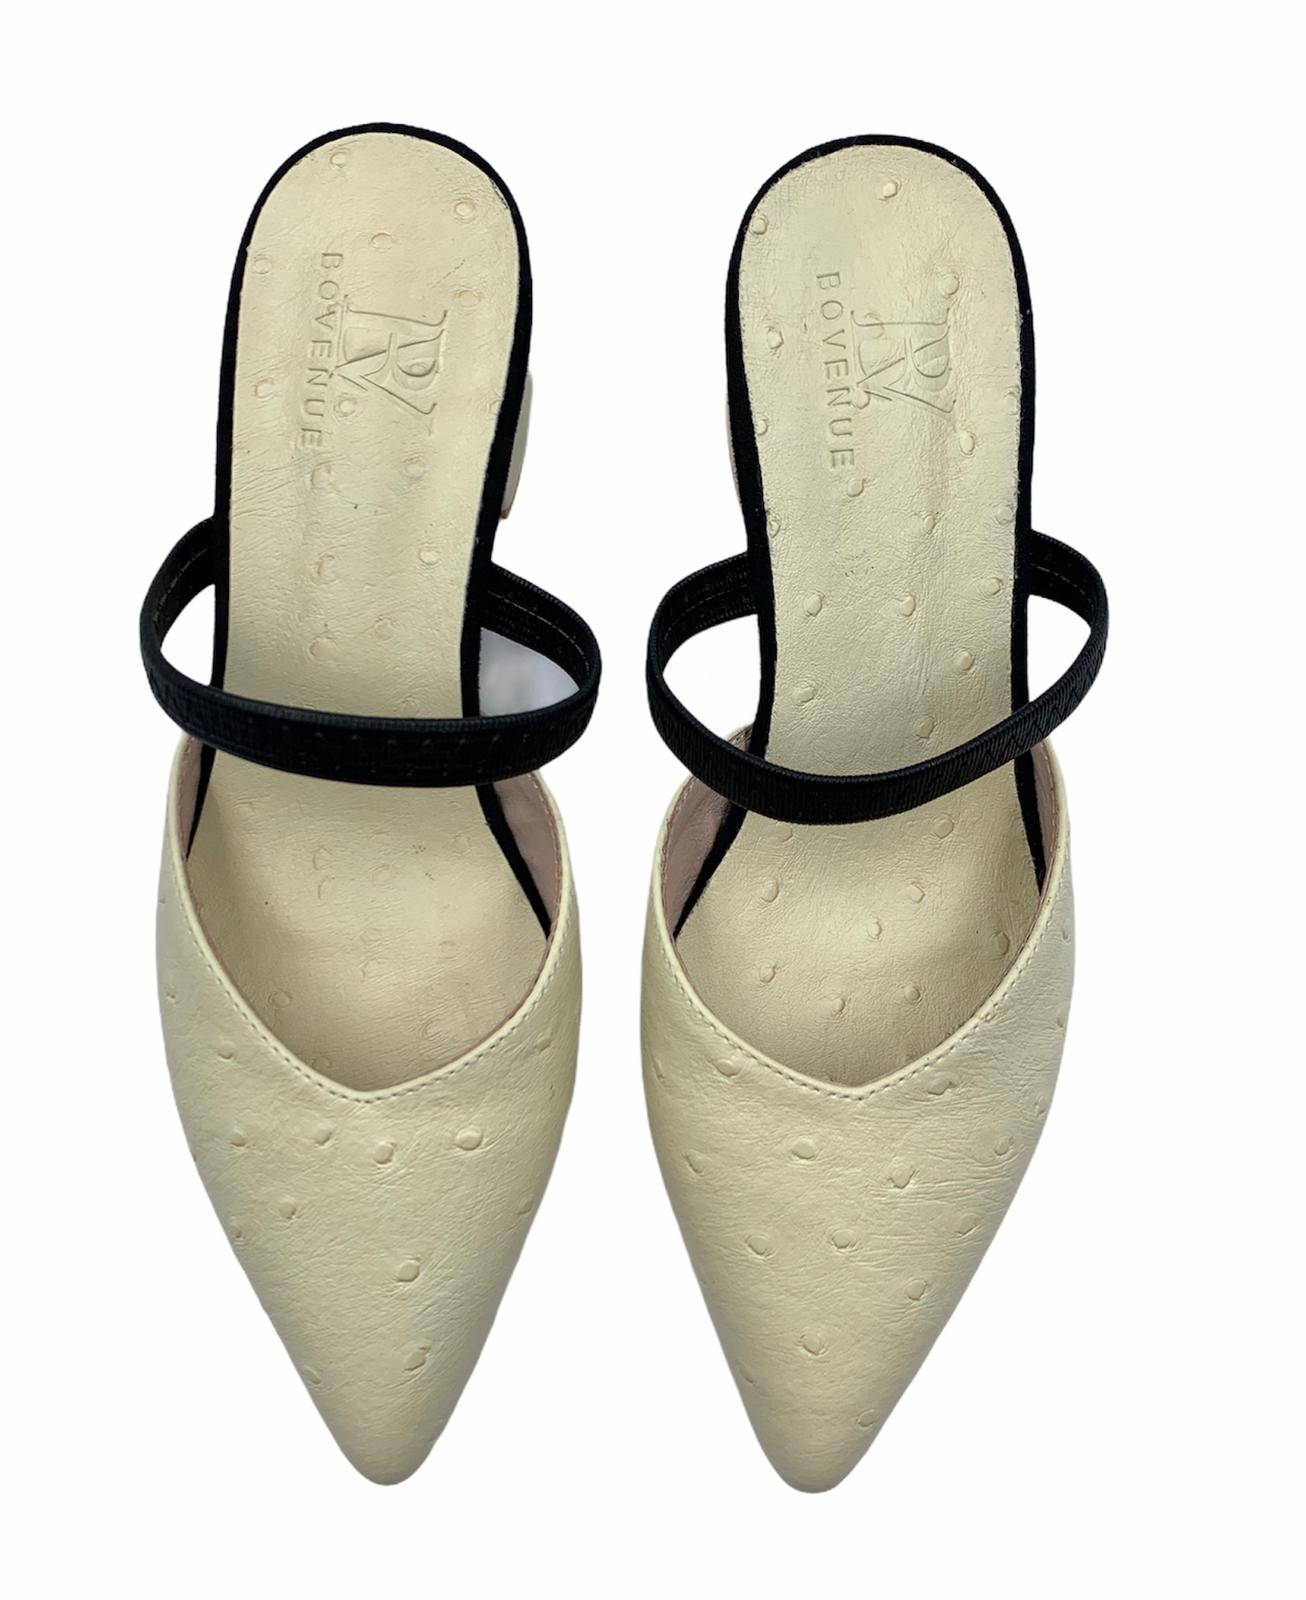 حذاء كلاسيكي&nbsp; من جلد النعام - كريمي